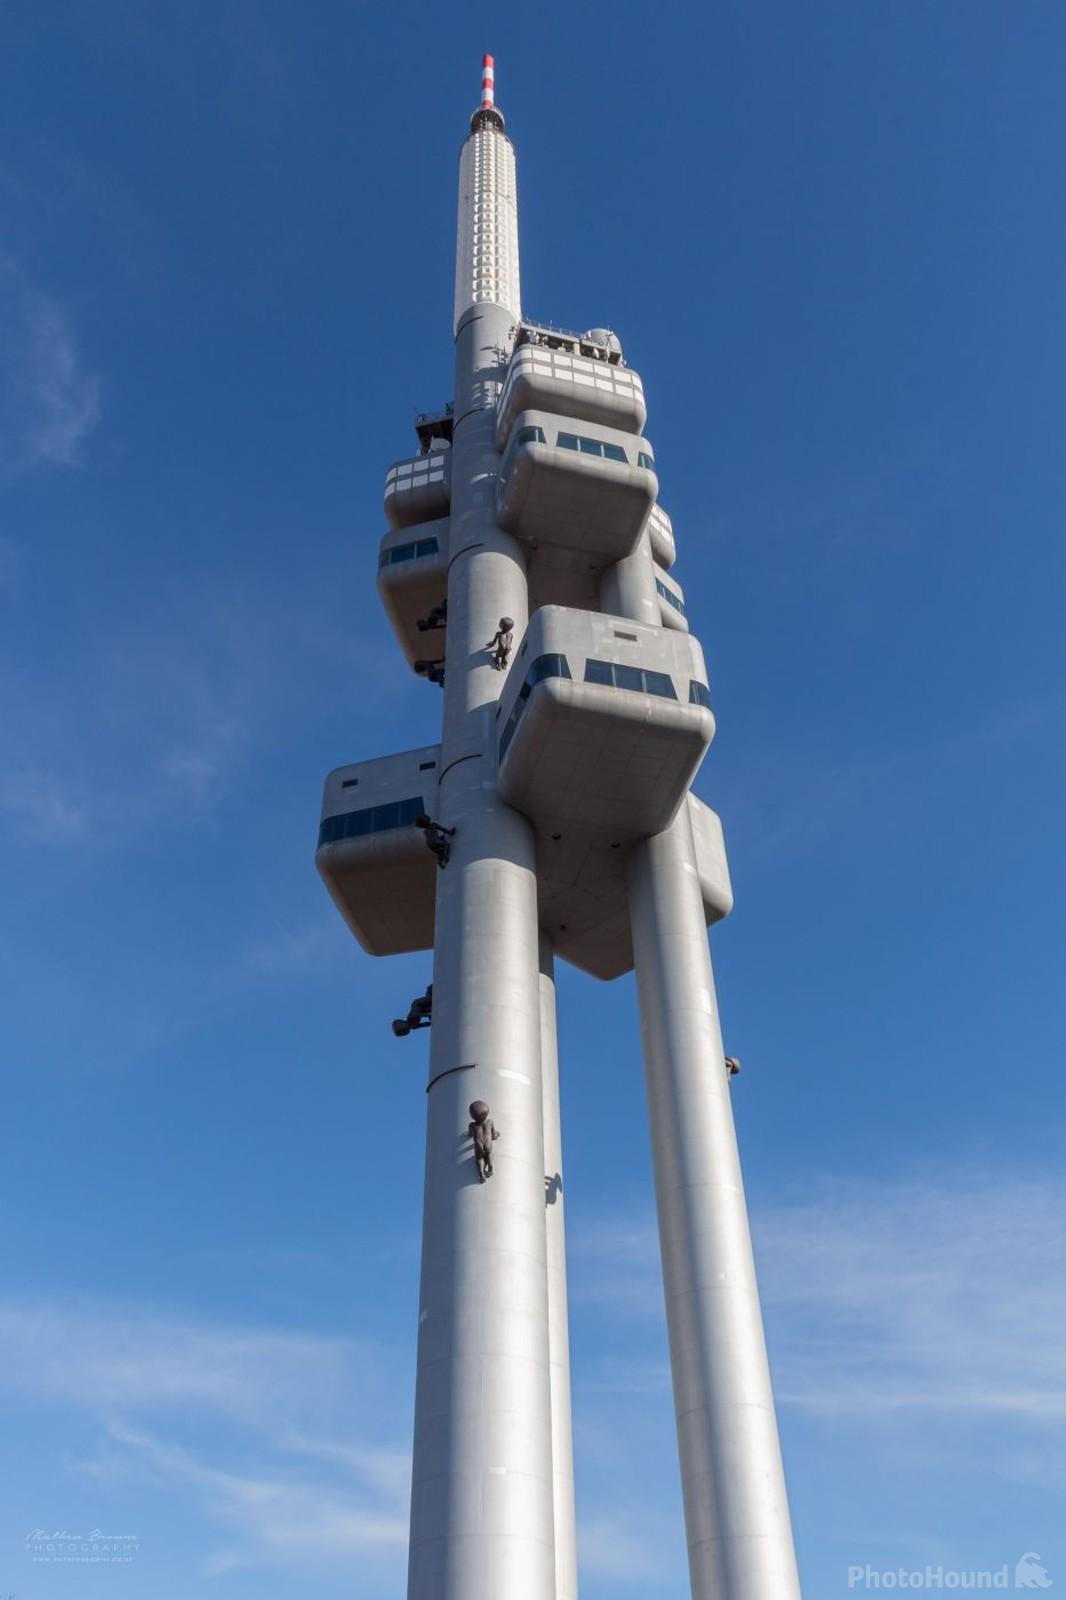 Image of Žižkov Television Tower by Mathew Browne